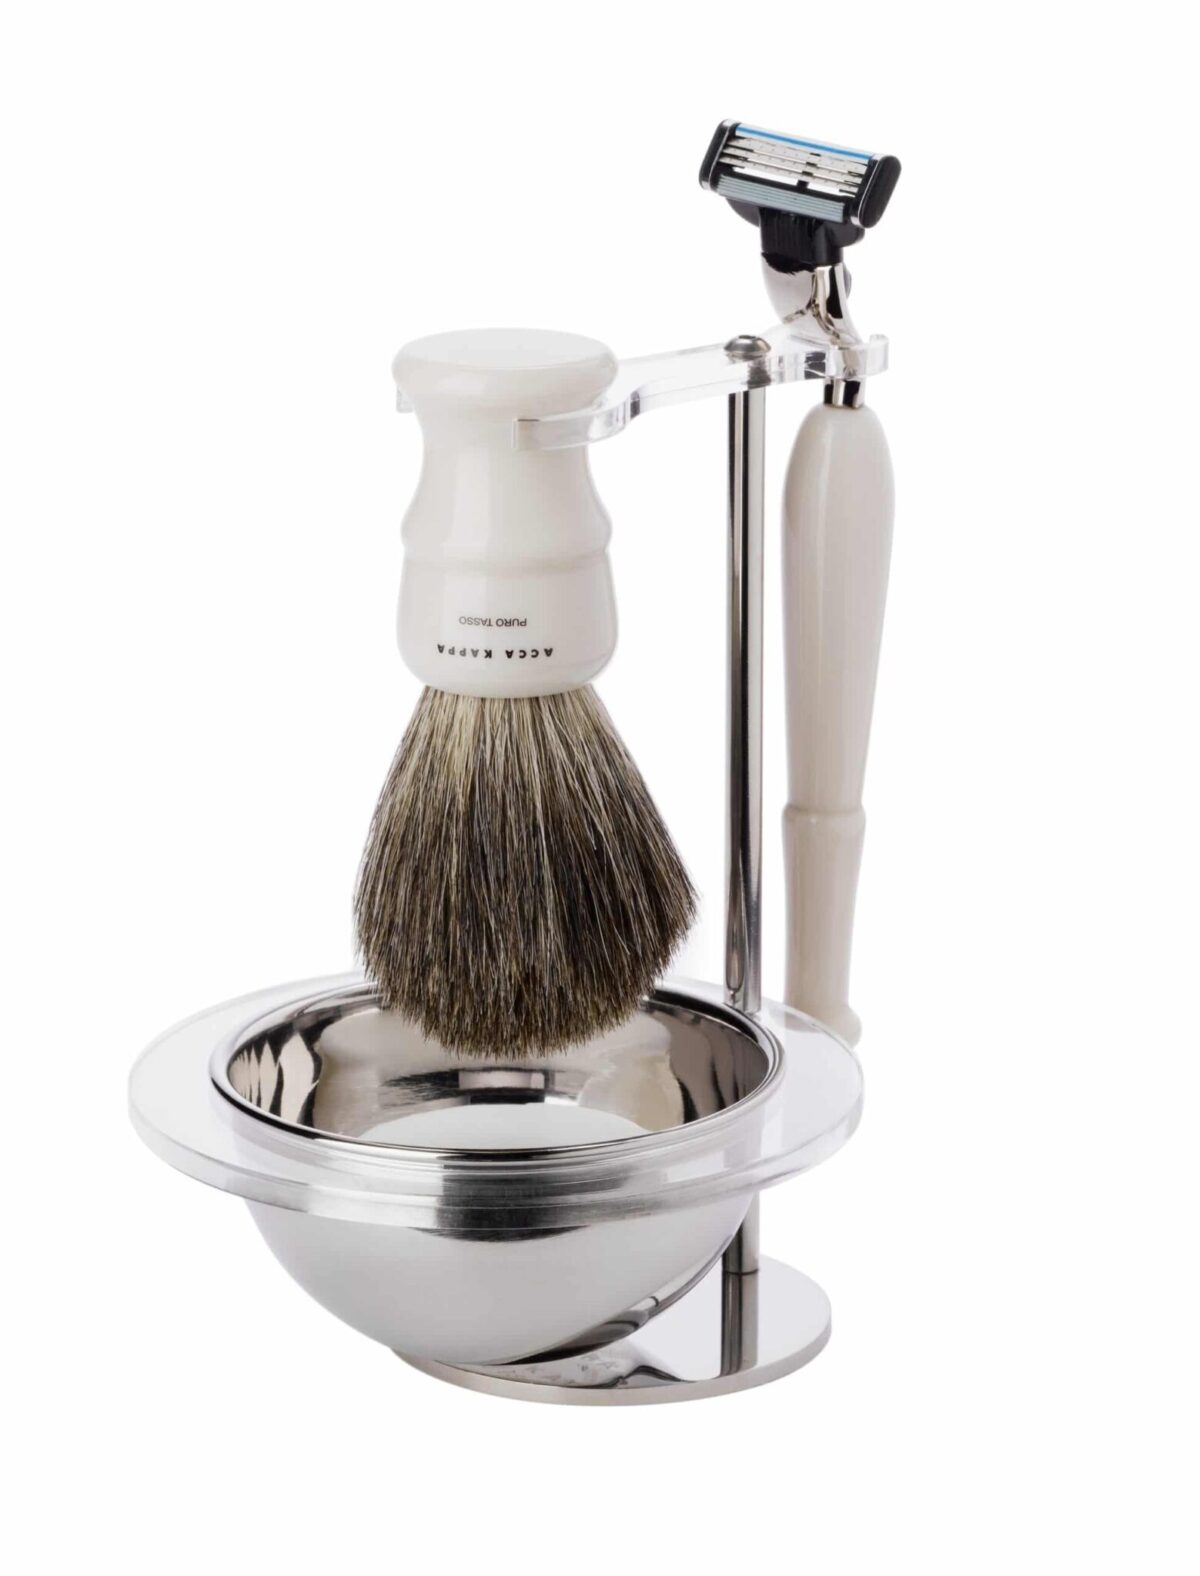 Acca Kappa Set cetka za brijanje od ciste dlake jazavca, Mach 3 i sapun za brijanje